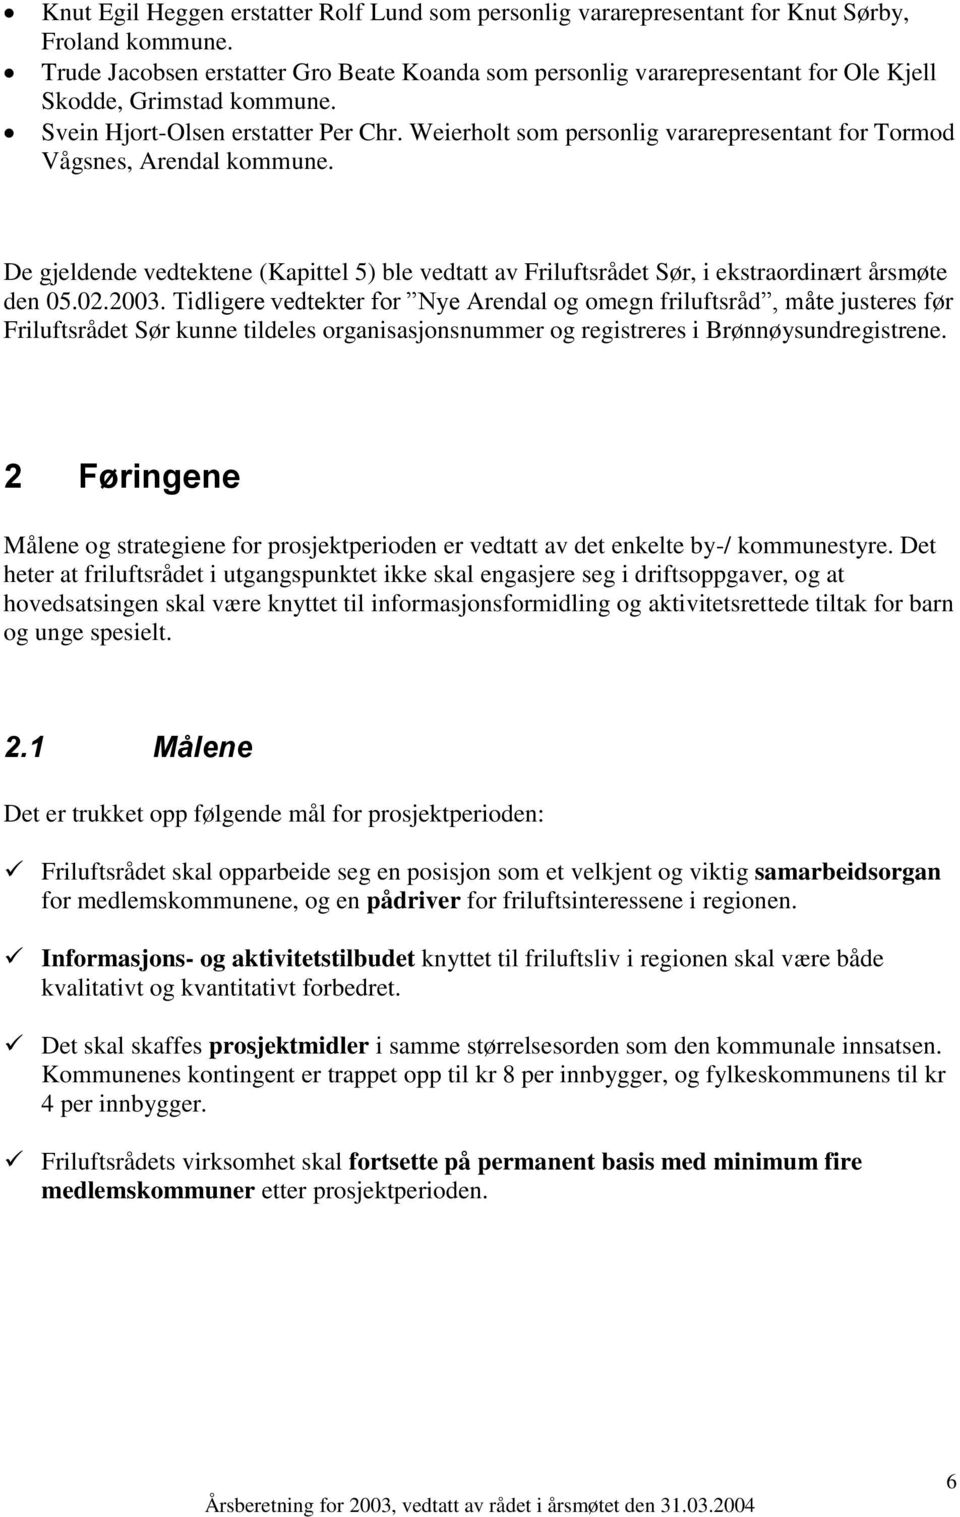 Weierholt som personlig vararepresentant for Tormod Vågsnes, Arendal kommune. De gjeldende vedtektene (Kapittel 5) ble vedtatt av Friluftsrådet Sør, i ekstraordinært årsmøte den 05.02.2003.